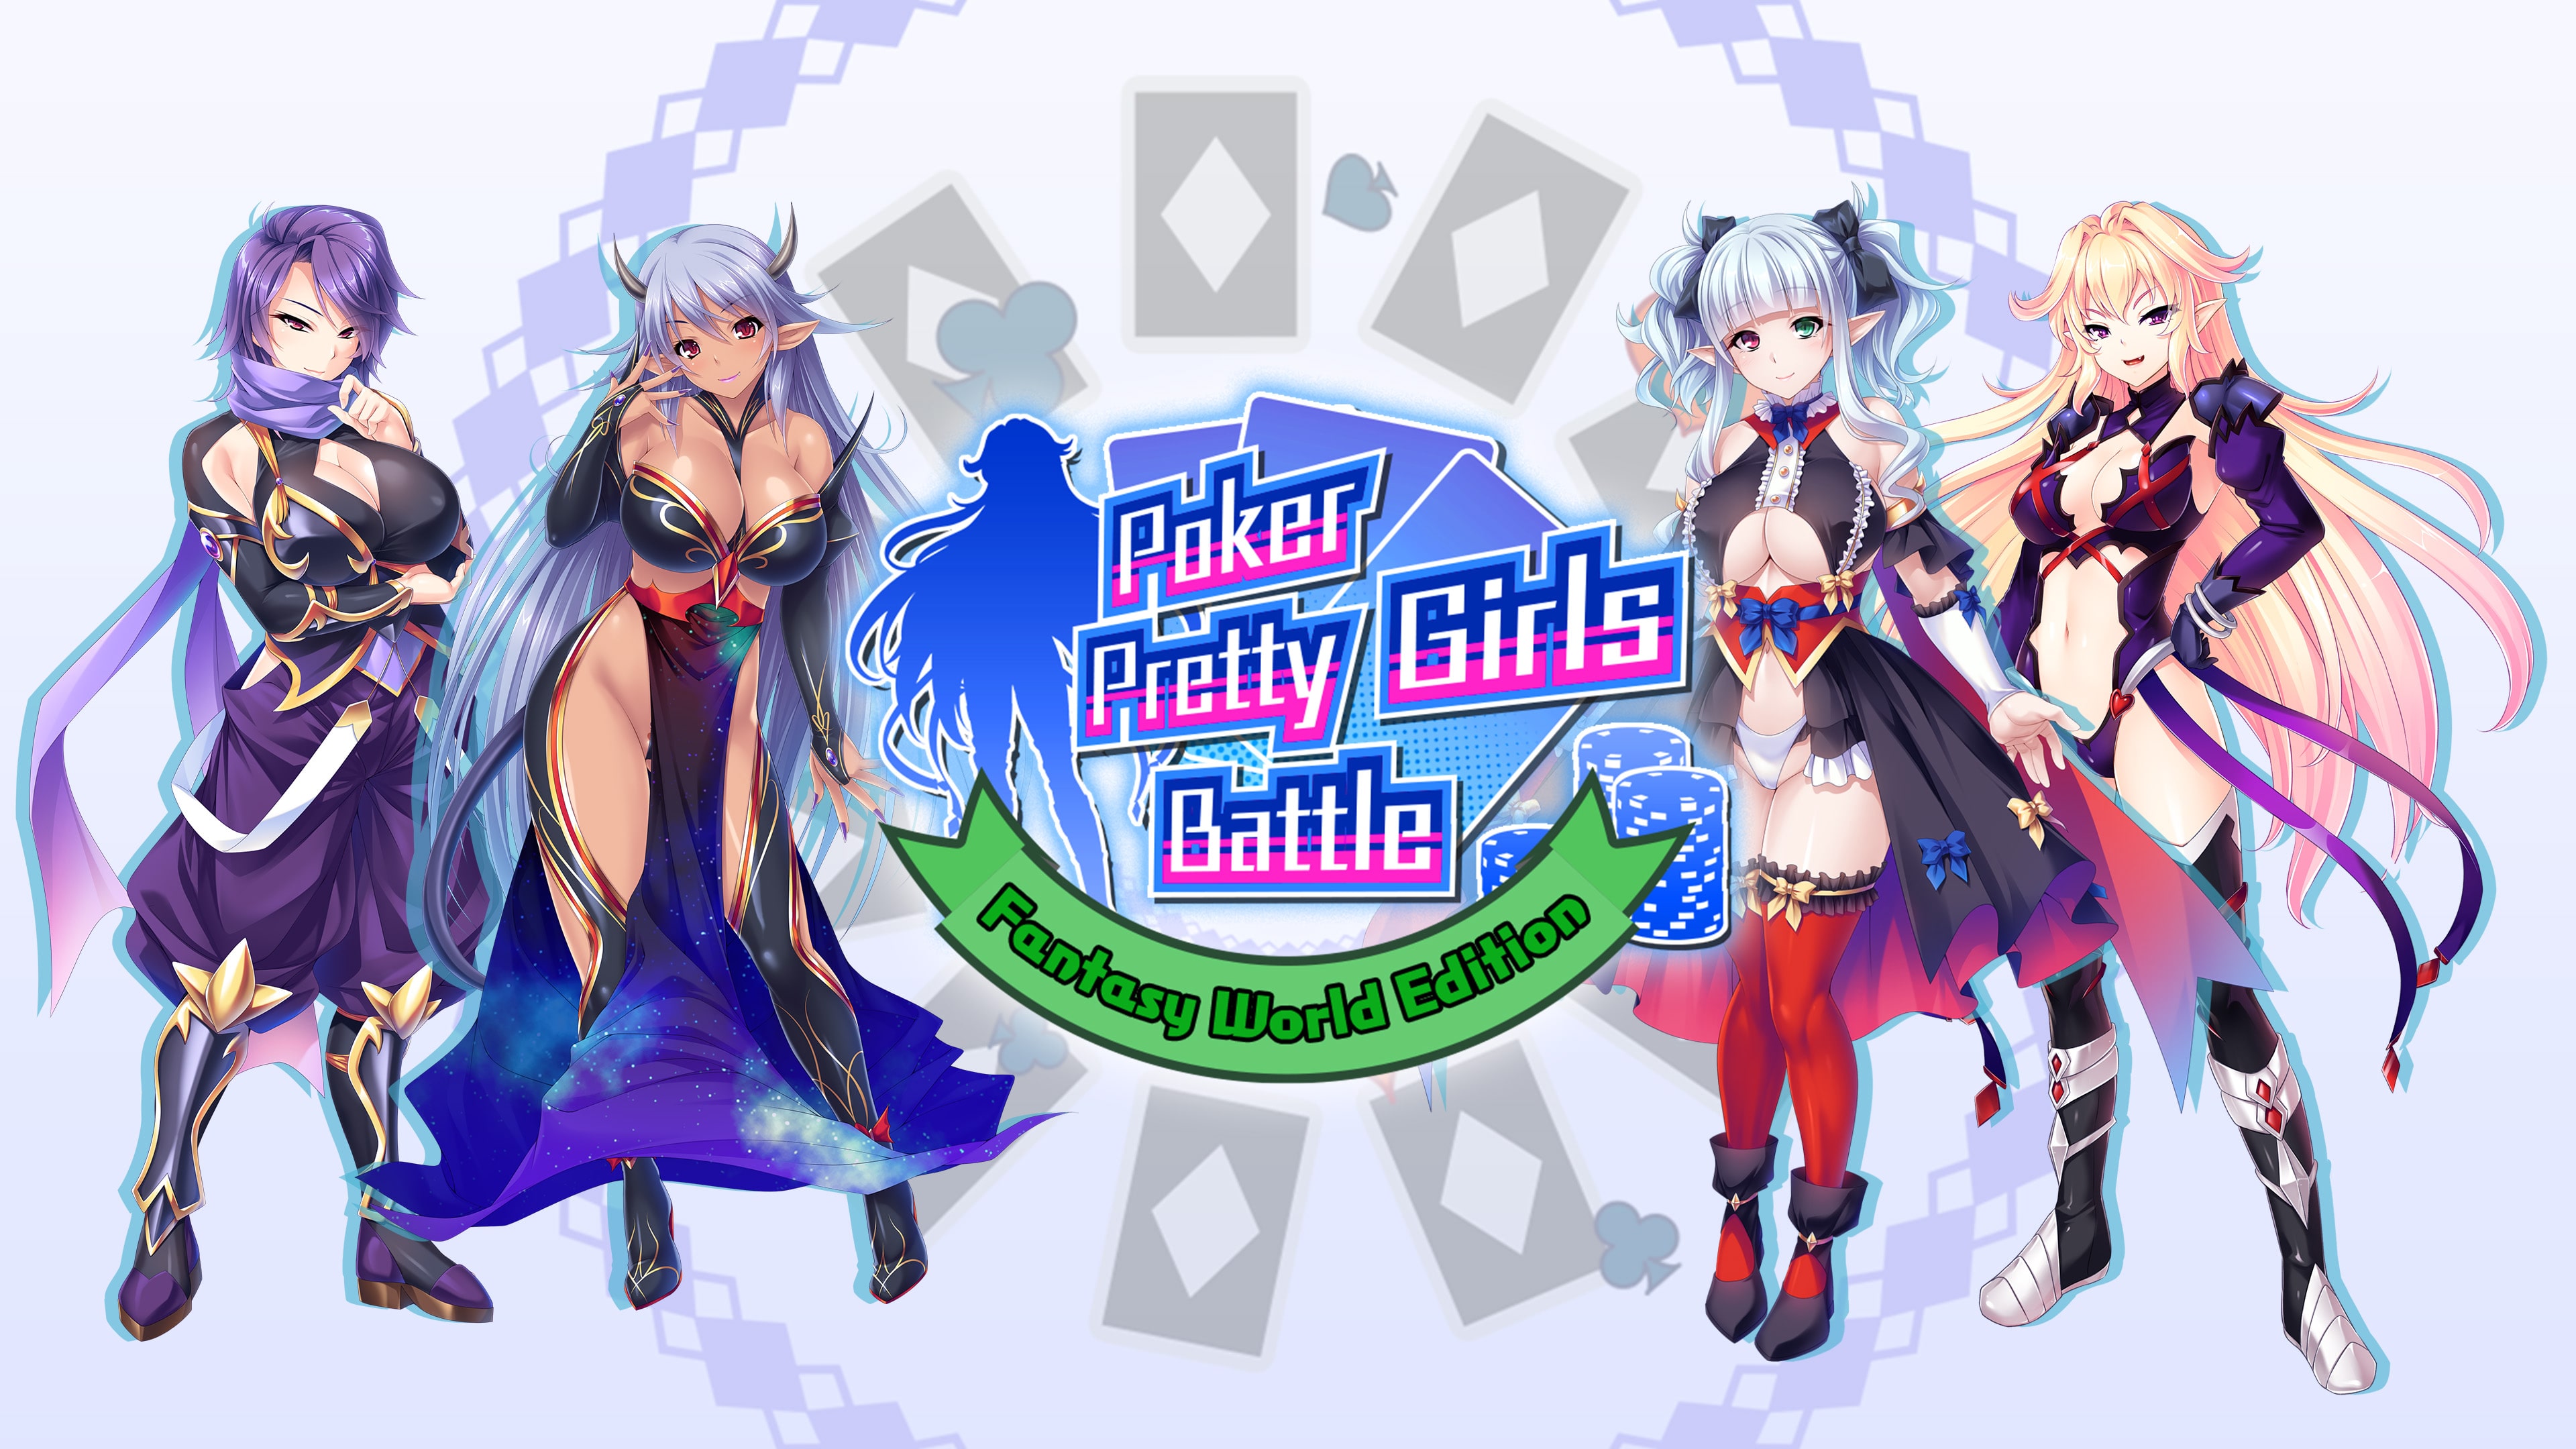 Poker Pretty Girls Battle: Fantasy World Edition (簡體中文, 英文, 繁體中文, 日文)